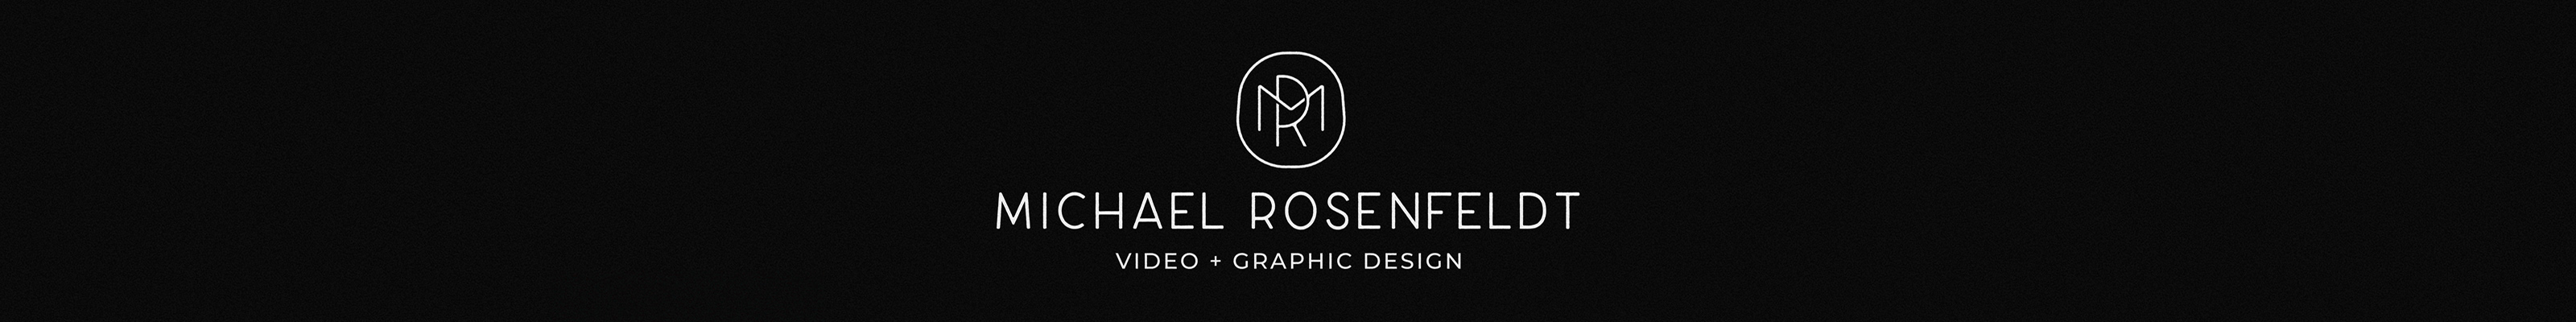 Michael Rosenfeldt のプロファイルバナー